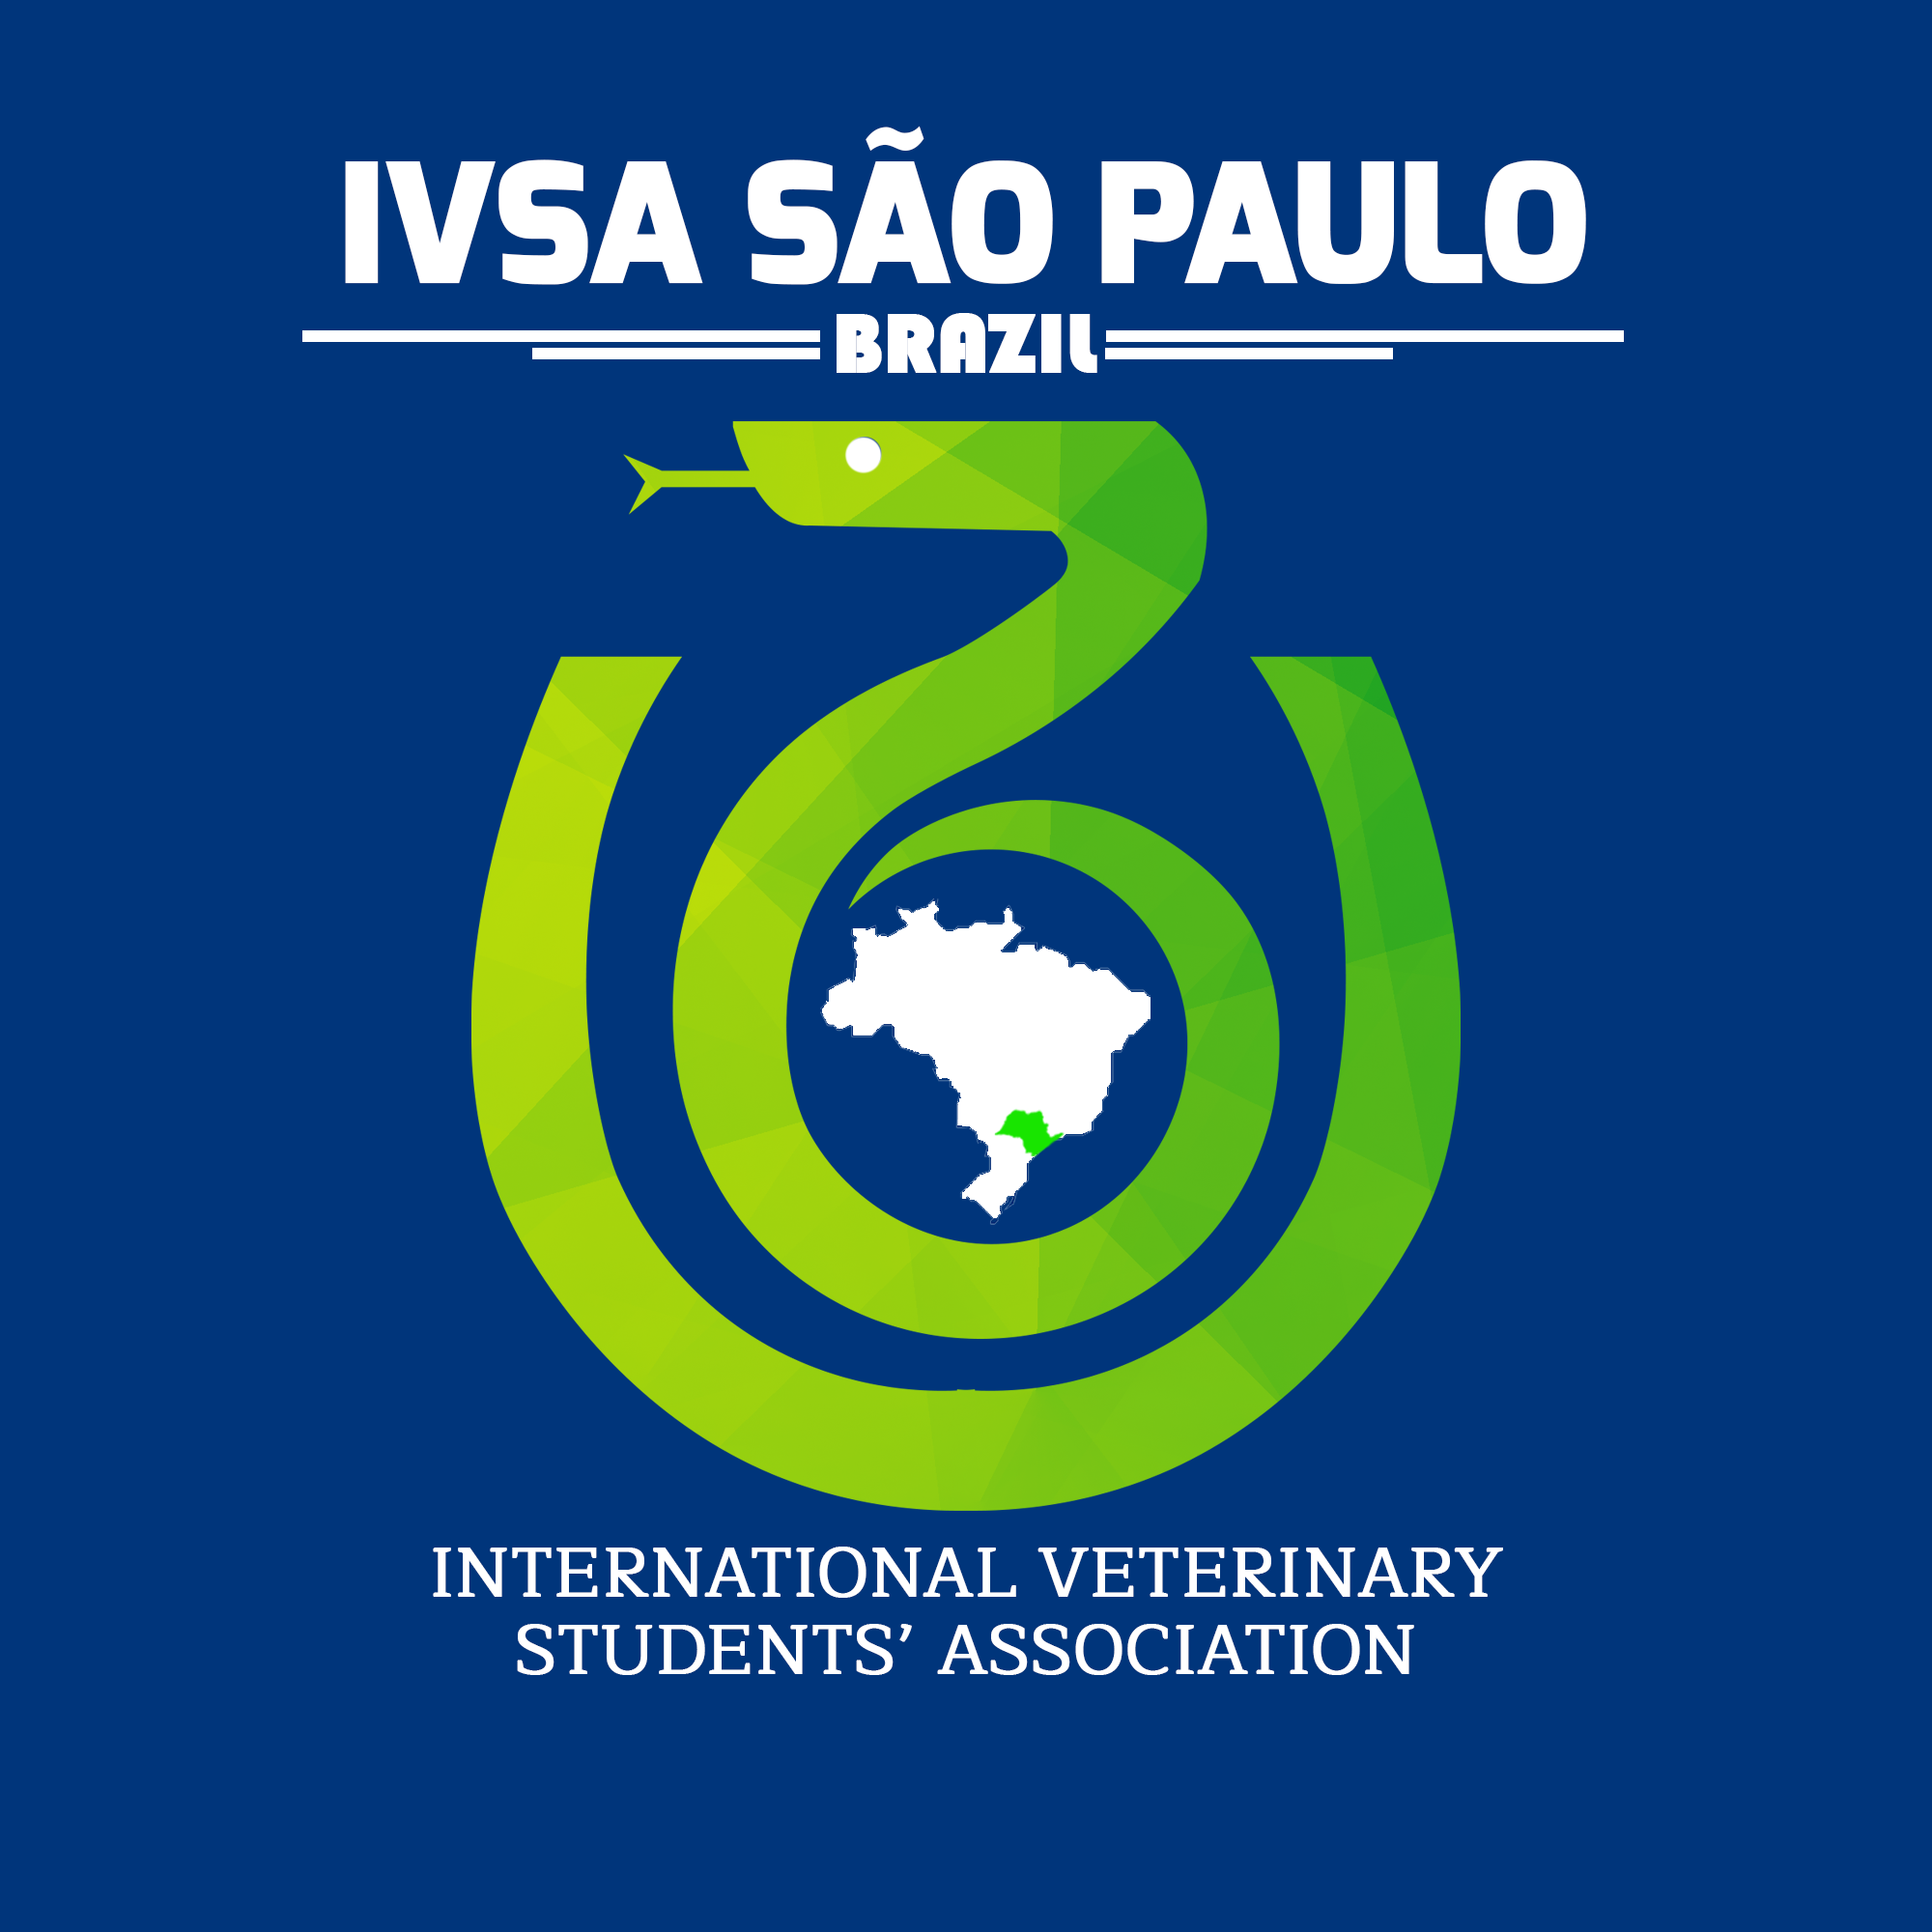 Congressos, simpósios e uma variedade de programas de intercâmbio para estudantes de medicina veterinária do mundo inteiro compõem o núcleo de atividades da IVSA, que desde 2020 conta com uma unidade no Brasil. Créditos: IVSA Global 